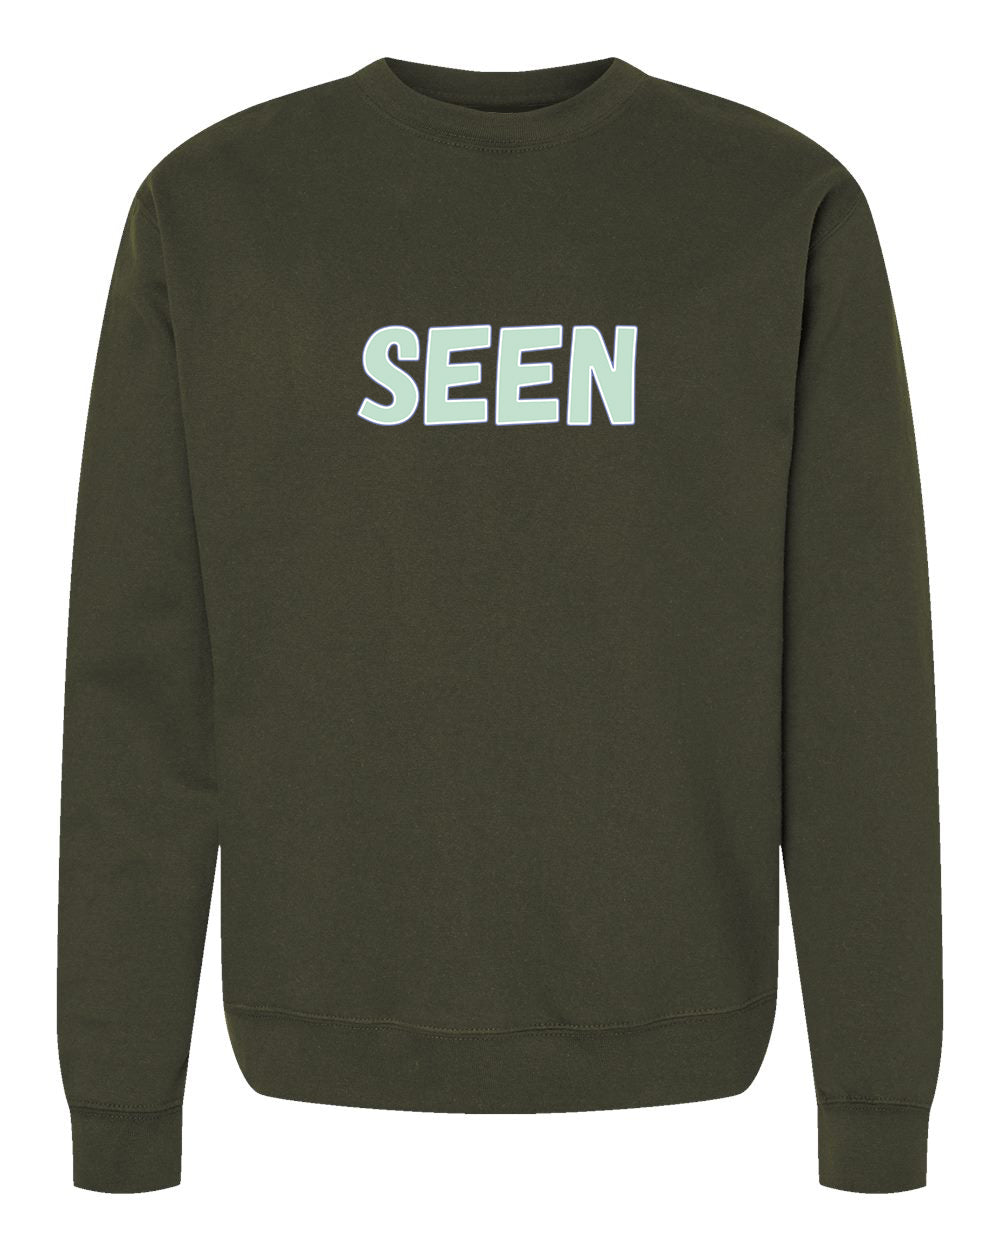 Seen Unisex Crewneck Sweatshirt by Seen Not Seen